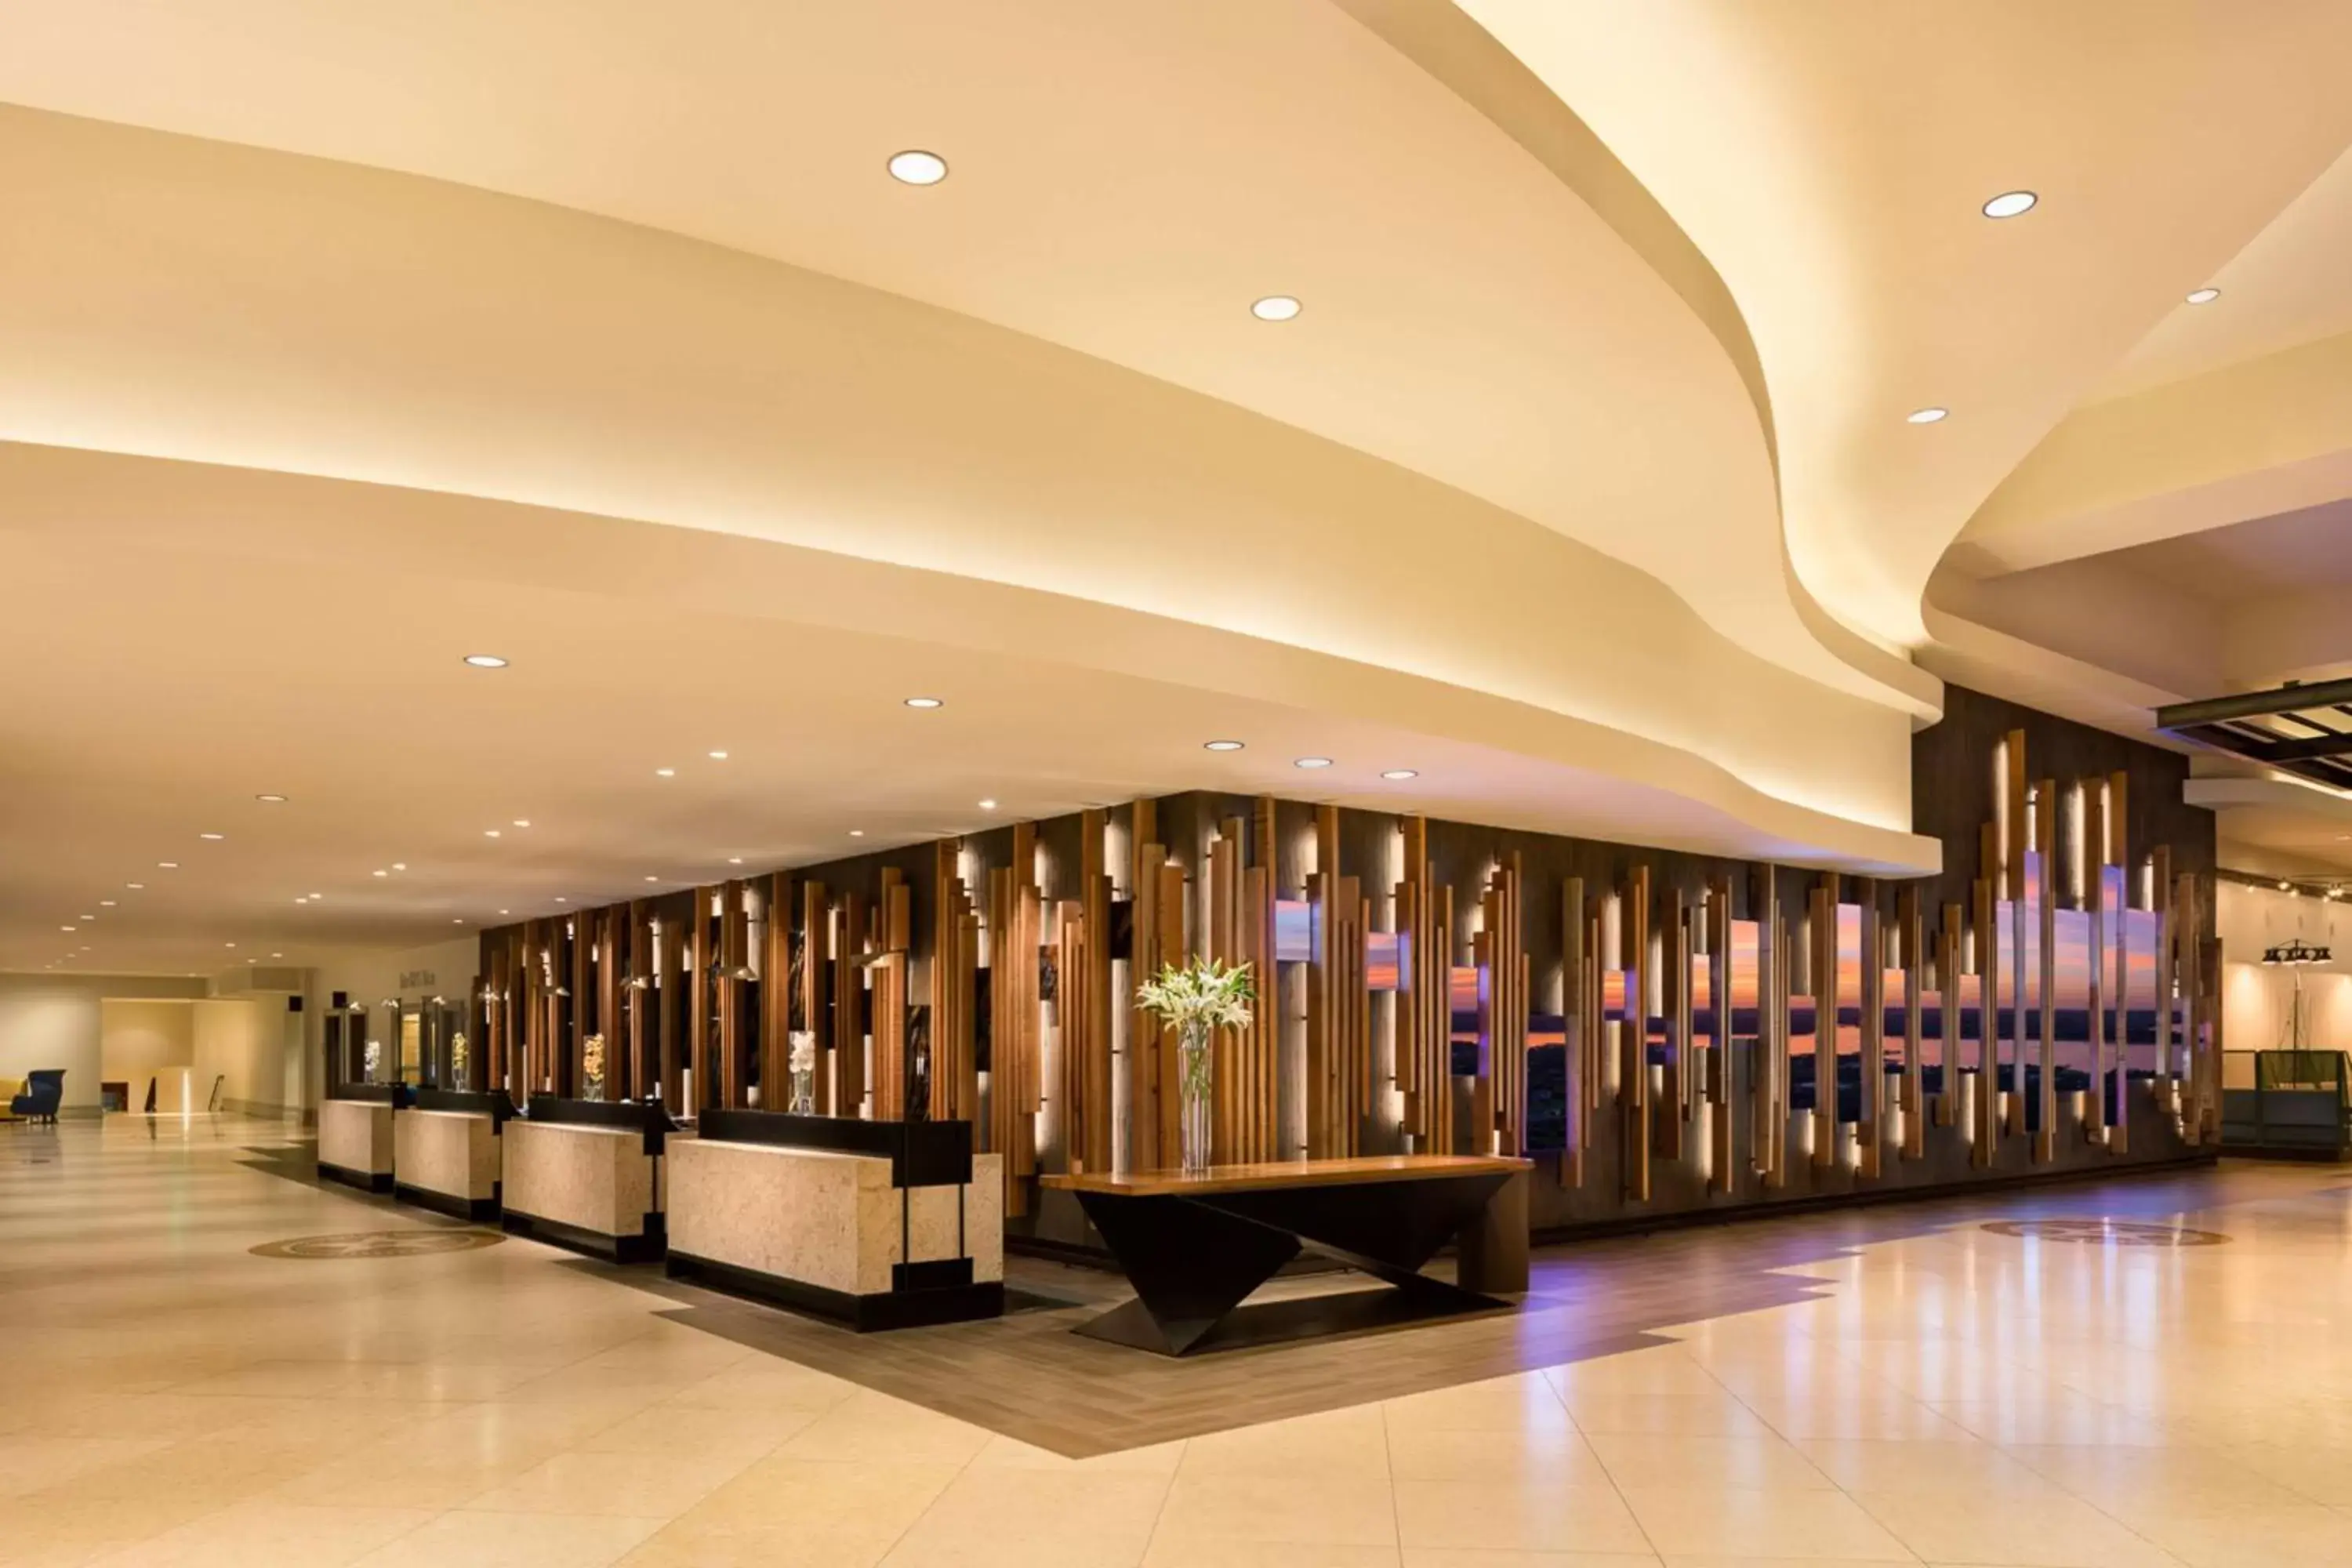 Lobby or reception in Hilton Austin